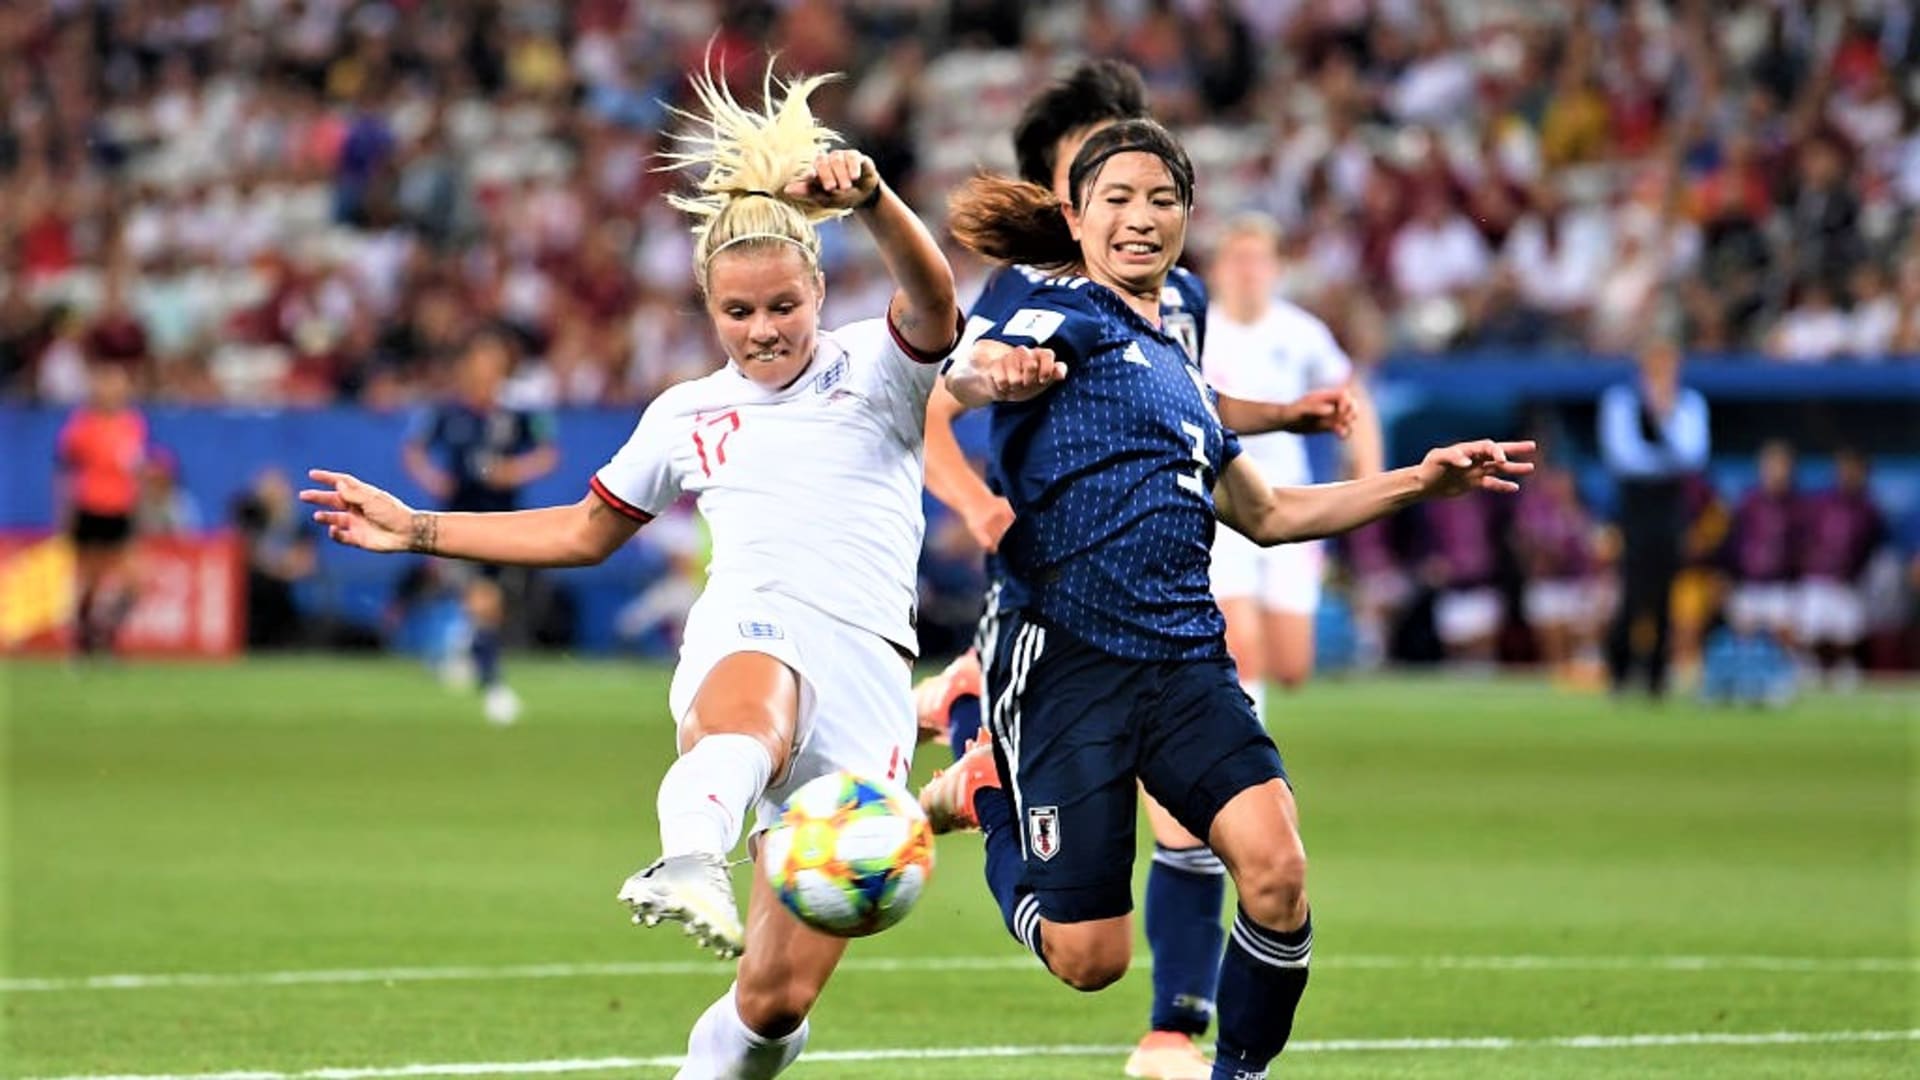 Fifa女子w杯19フランス大会グループステージ第3戦 なでしこジャパンはイングランドに敗れて 2位でグループdを突破